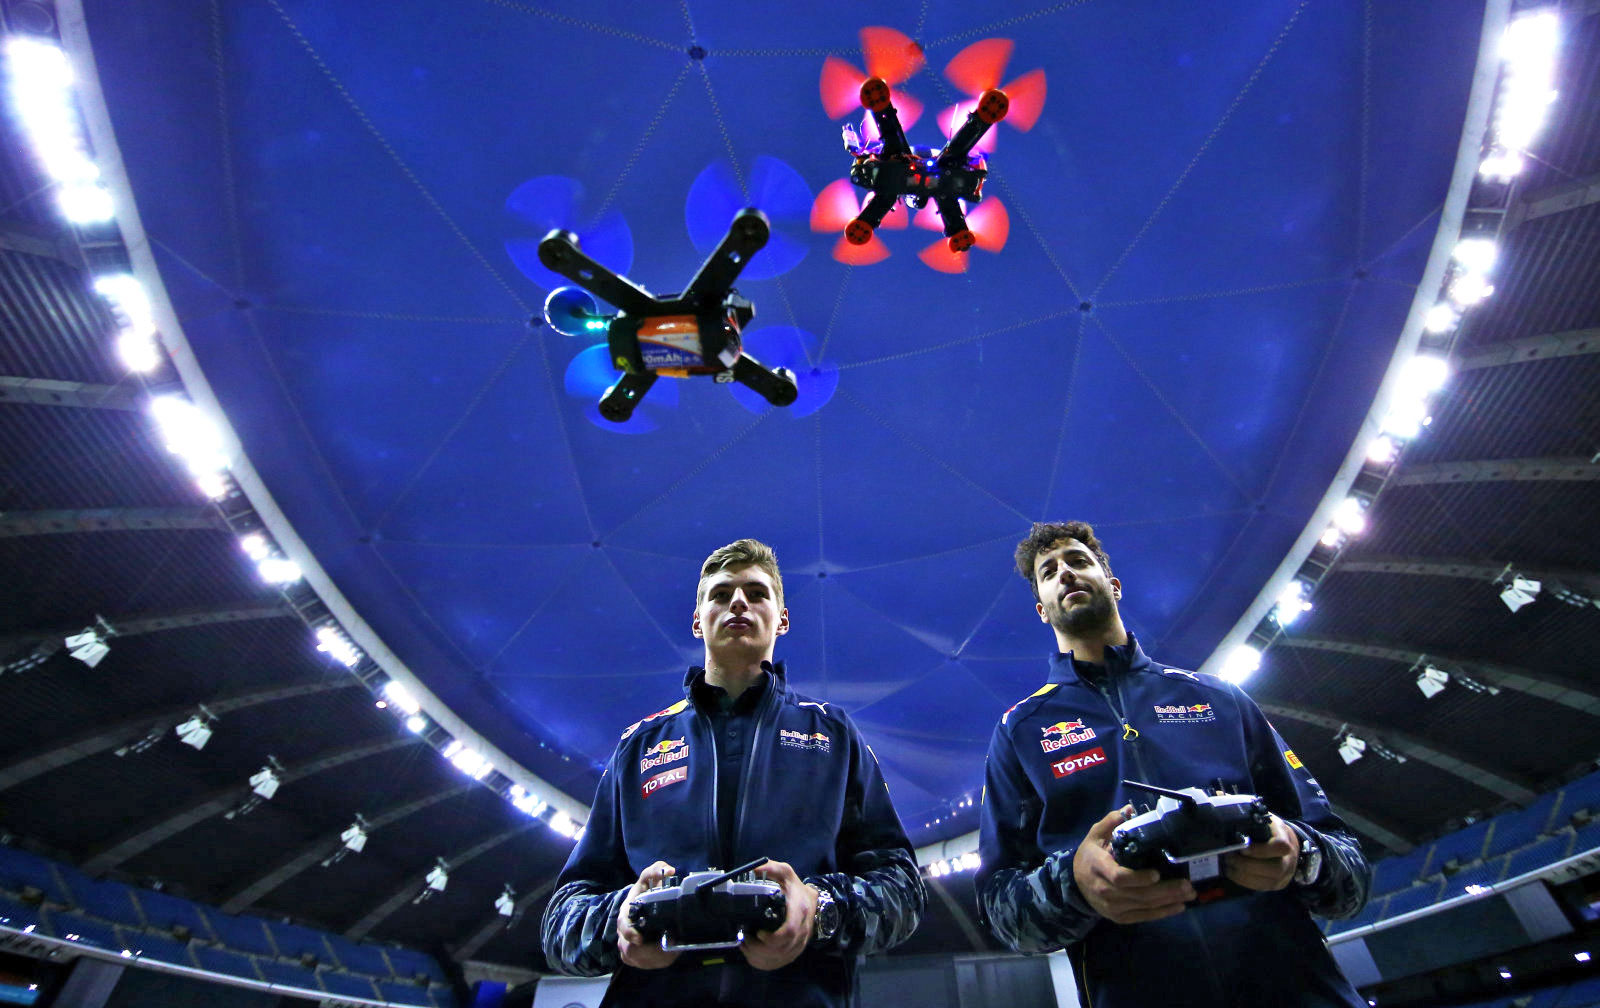 Dünyanın en kapsamlı Drone yarışması World Drone Cup, 20 – 23 Eylül’de İstanbul Yeni Havalimanı’nda